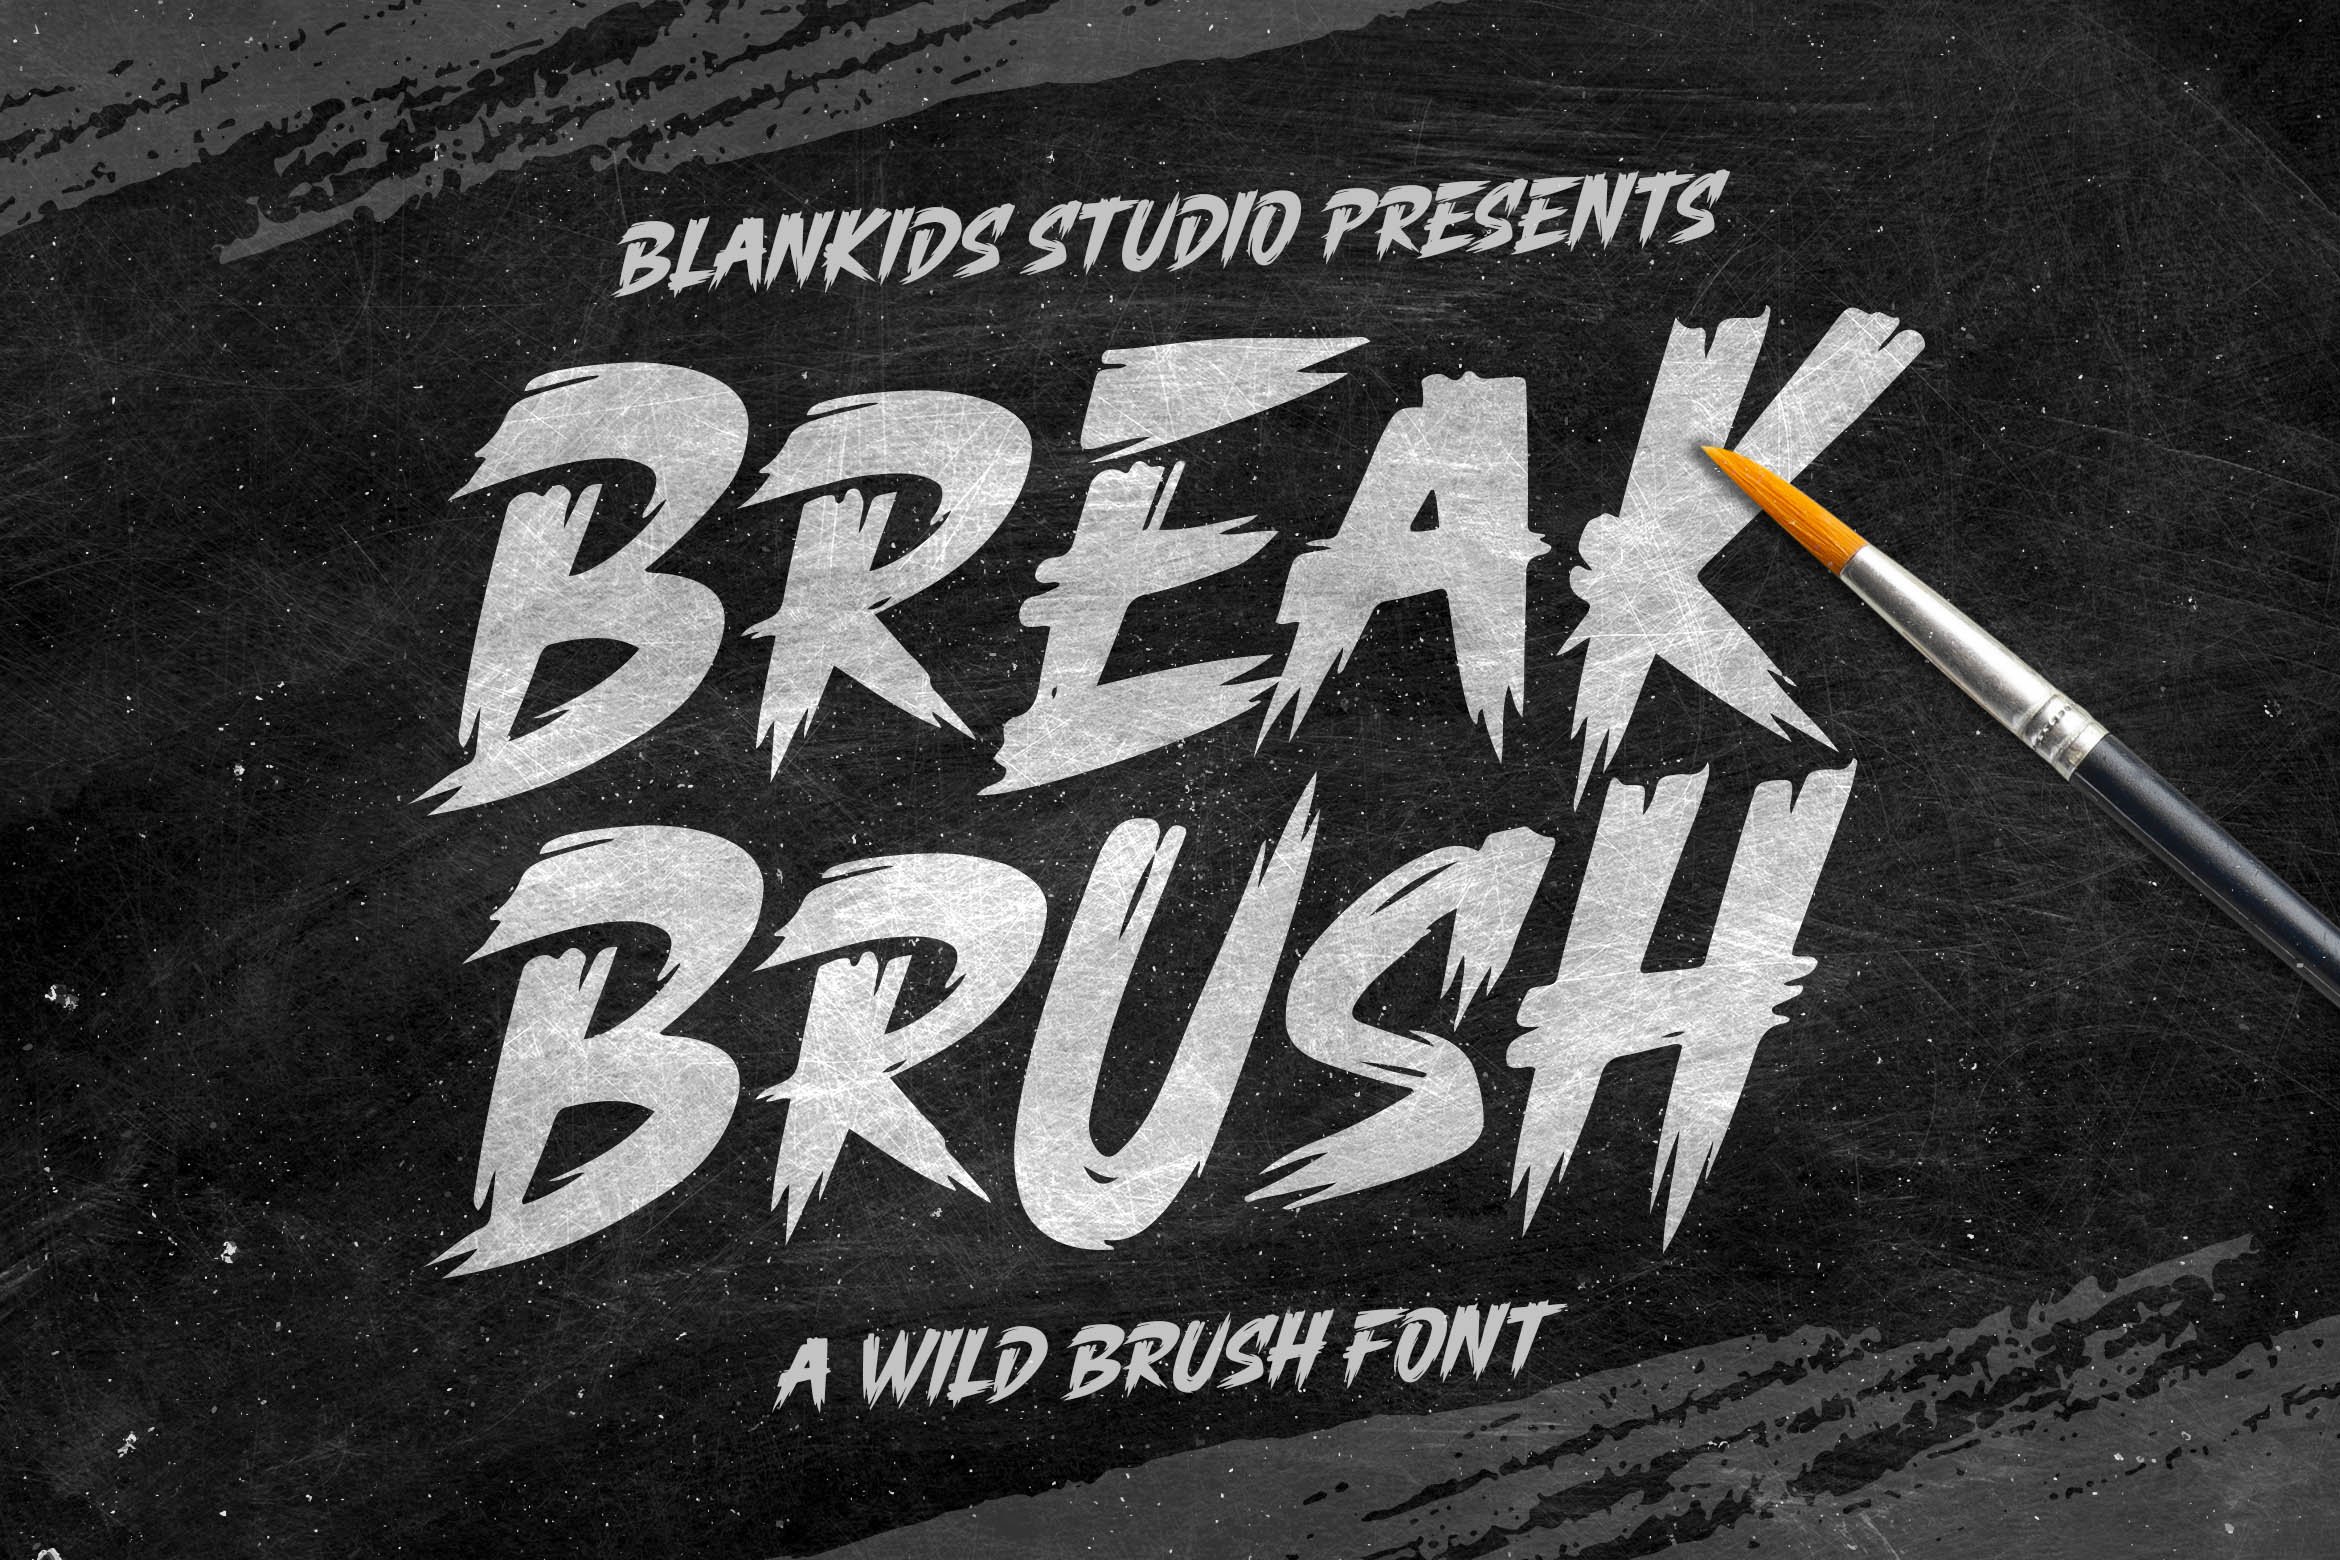 Break brush a Wild brush Font cover image.